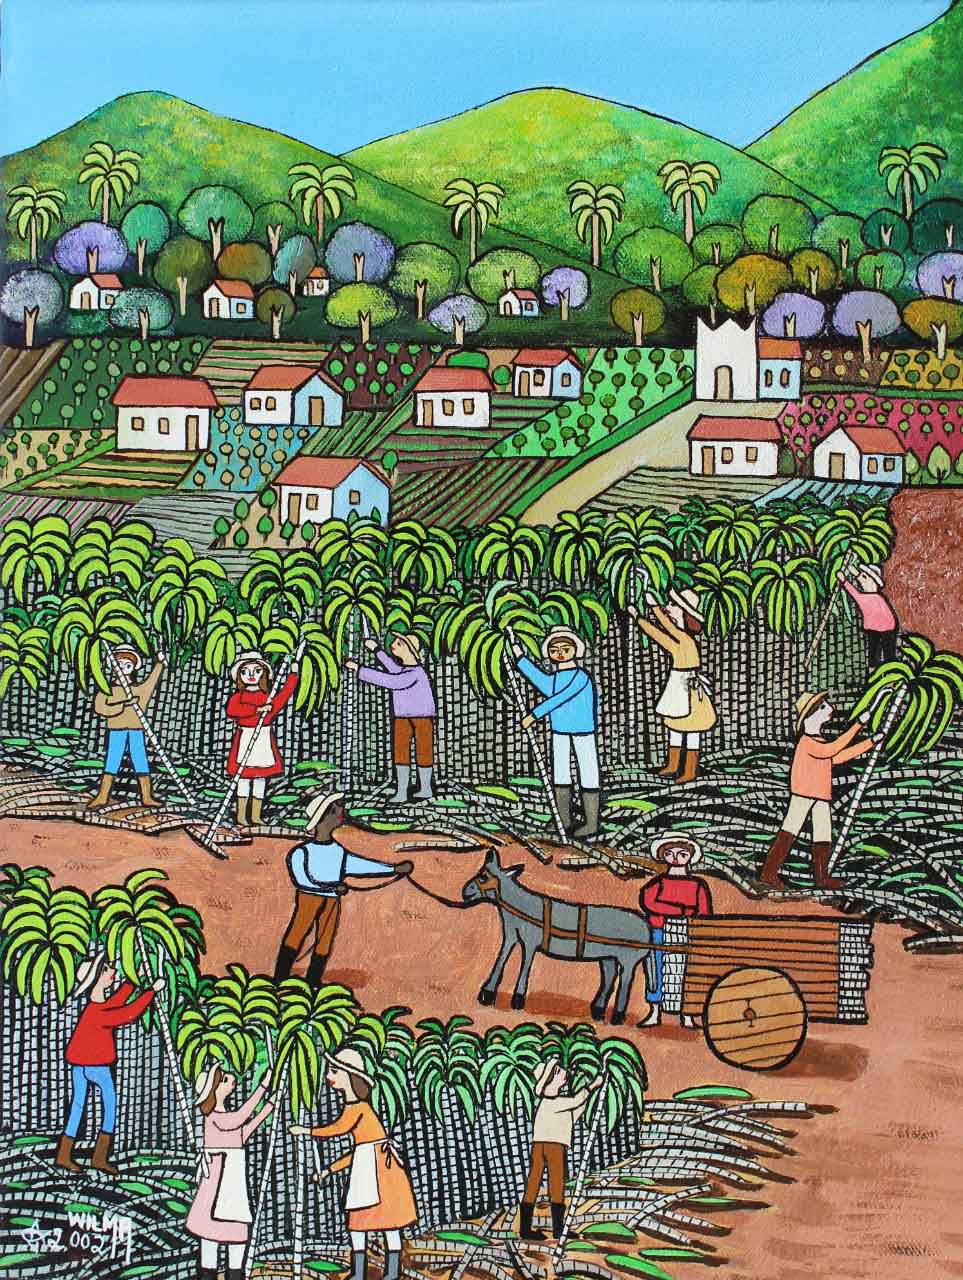 ويلما راموس, حصاد قصب السكر, 40× 30 - 2002. صور: الكشف.